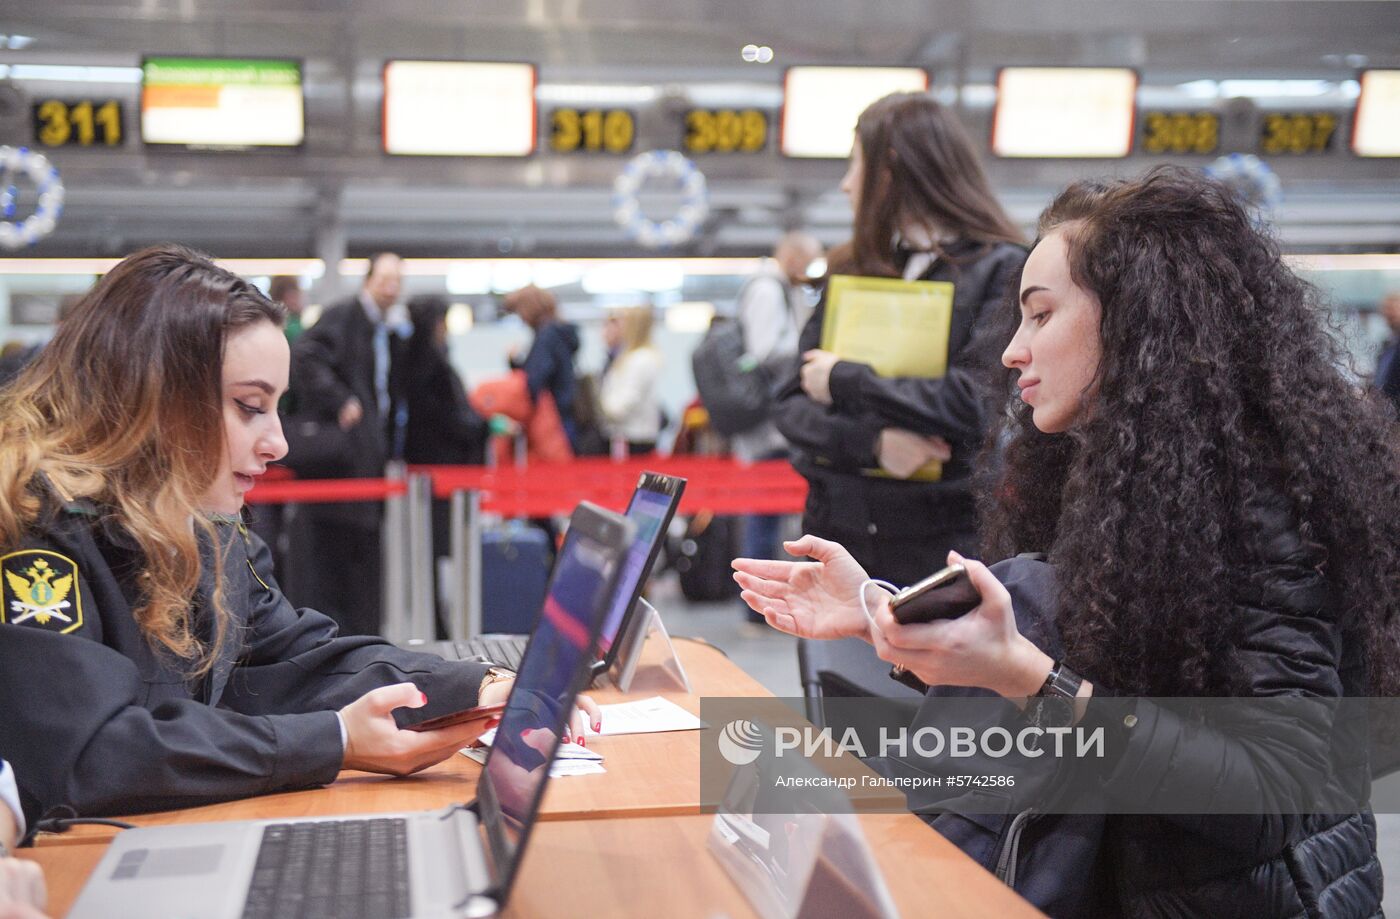 Акция "Узнай о своих долгах" в аэропорту Пулково